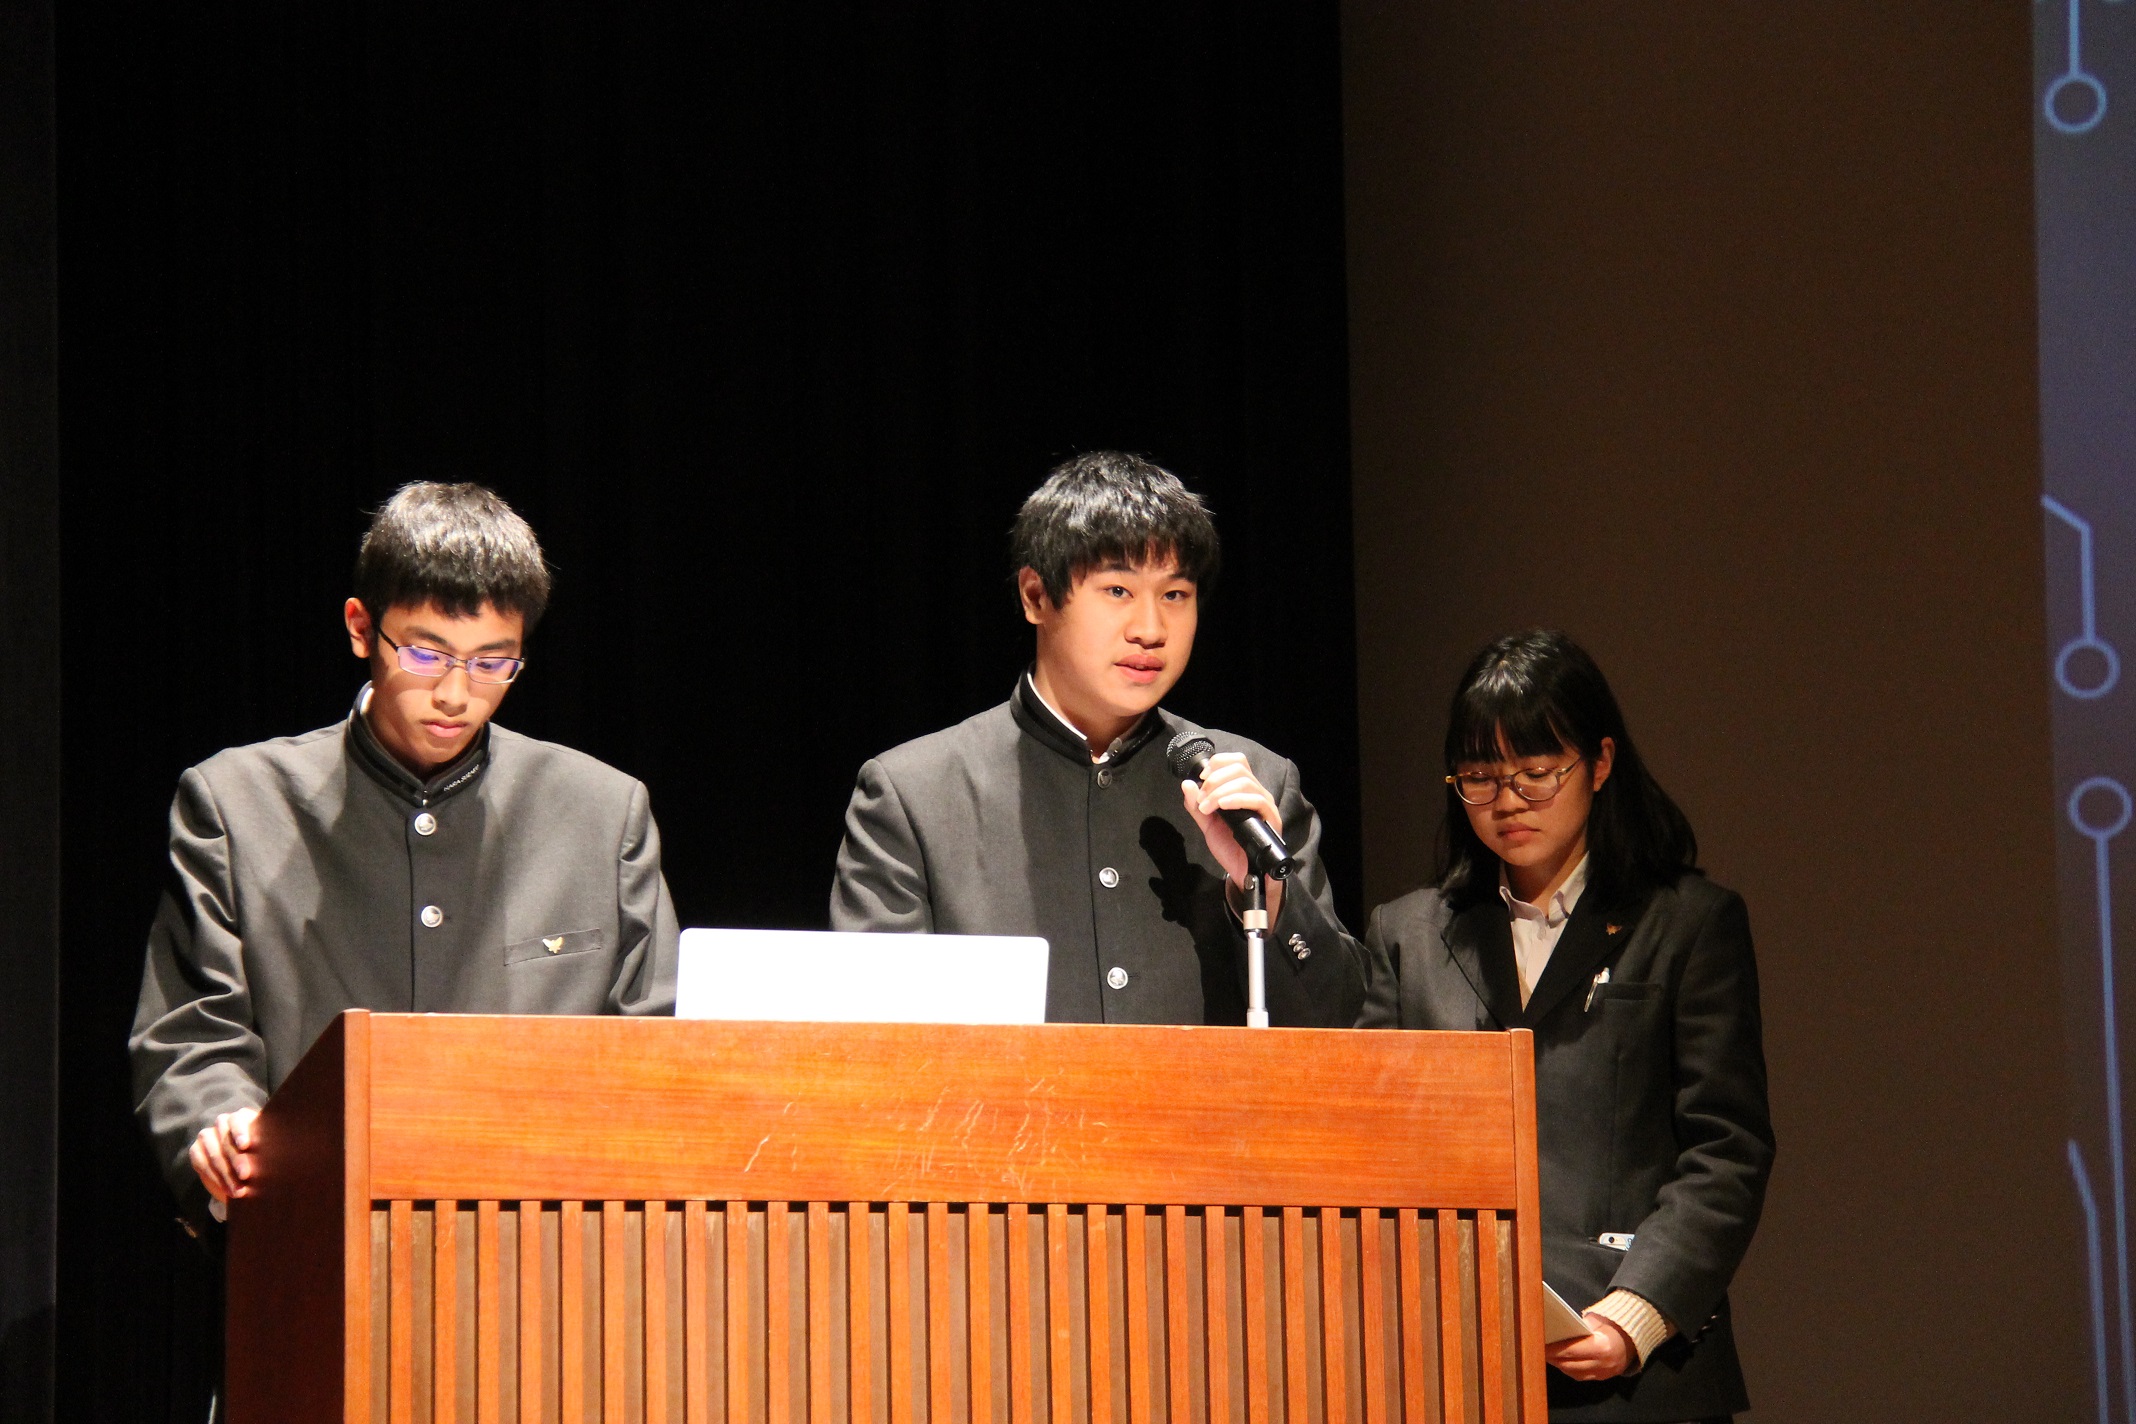 奈良朱雀高等学校の取組発表の様子